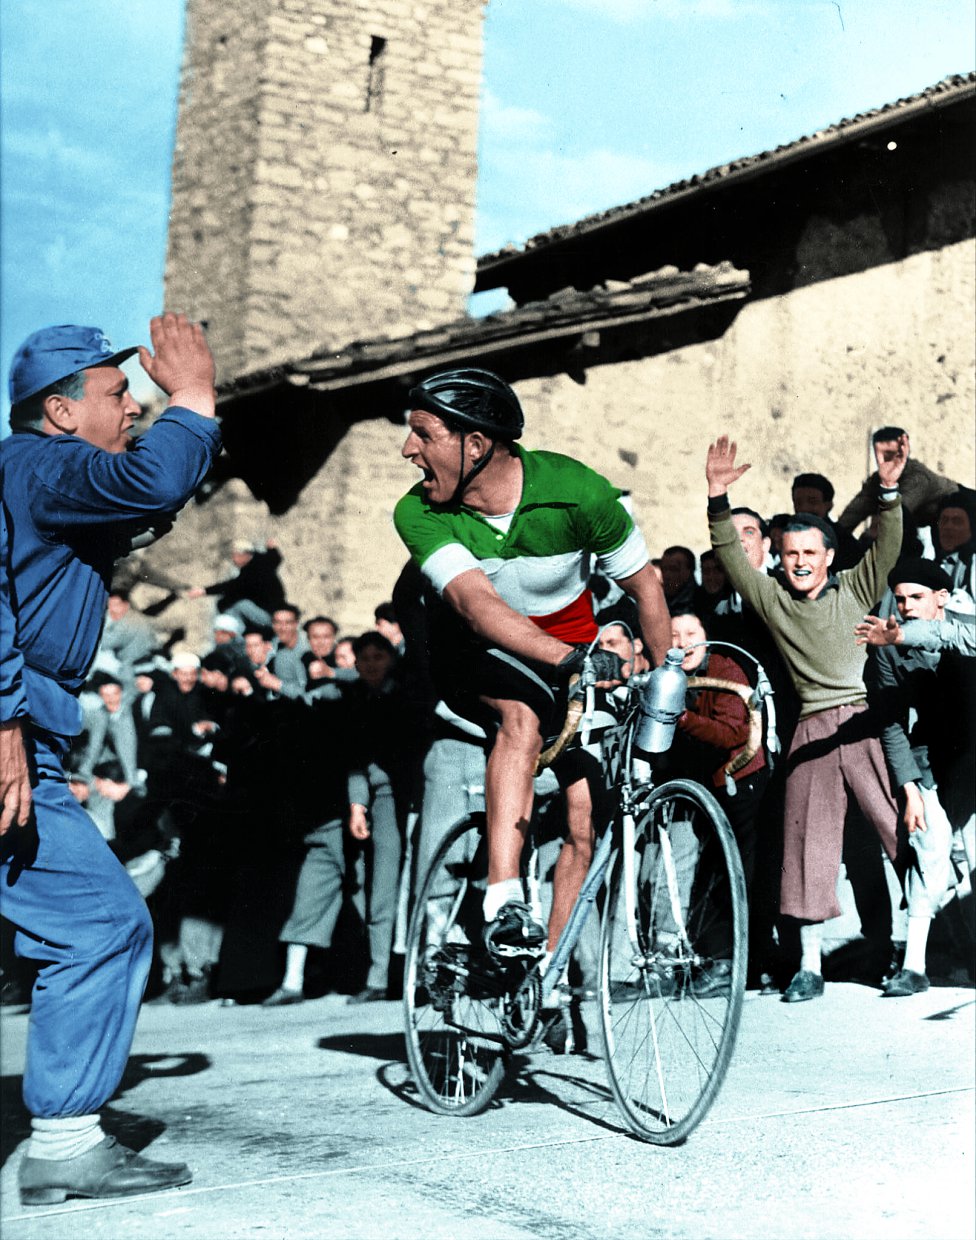 Ciclismo épico, legendario: Bartali, Coppi, Anquetil, Bahamontes, Gaul, Gimondi, Merckx... 1464015745_988592_1464016045_album_grande